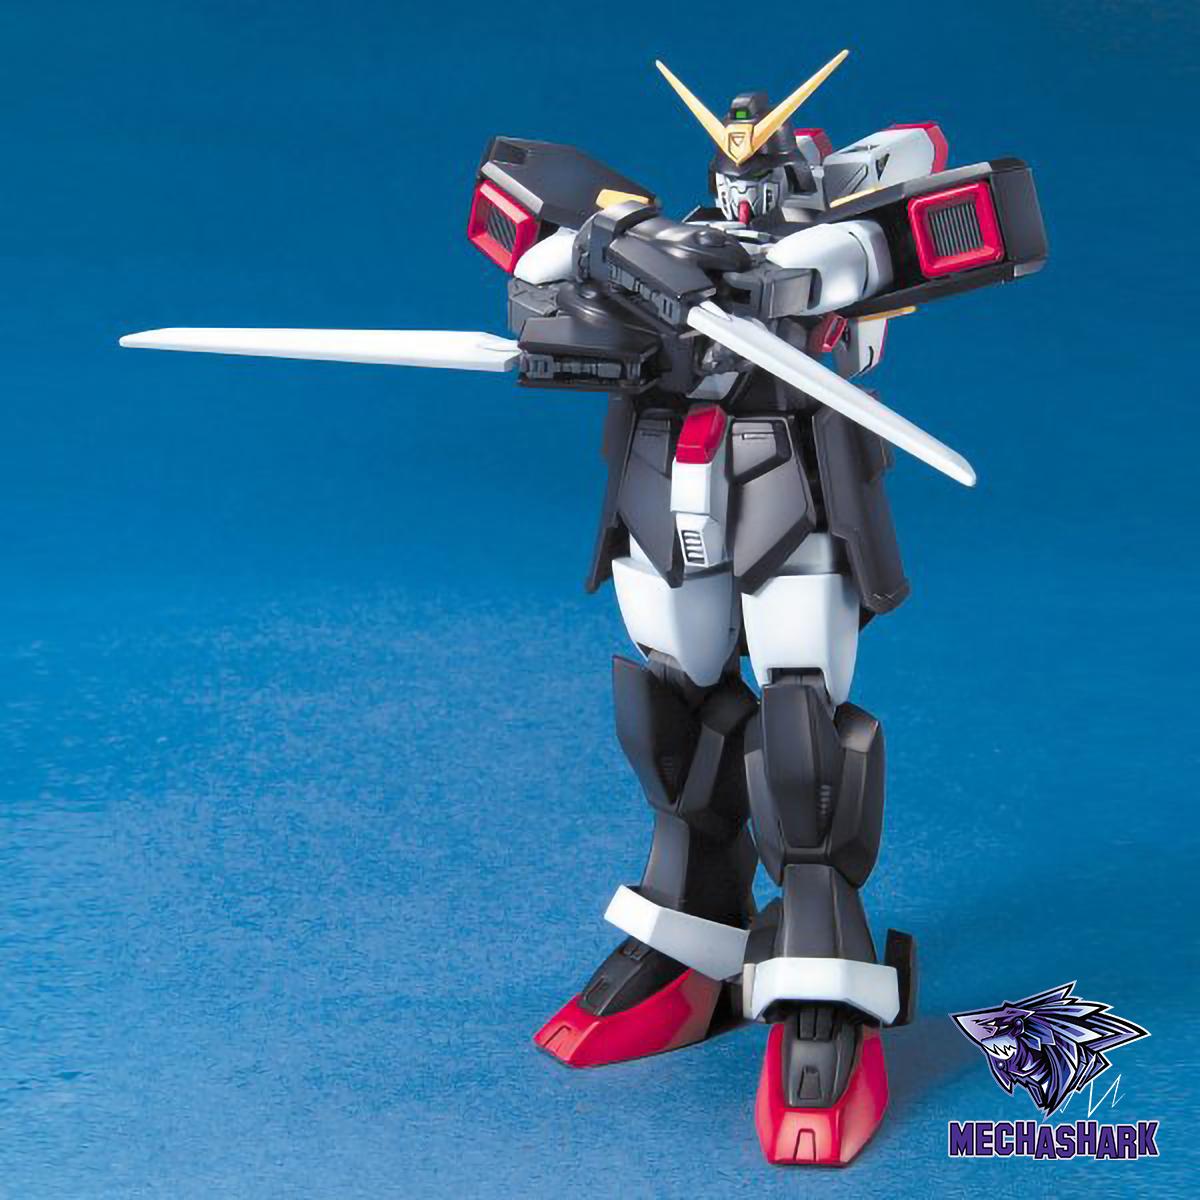 Mô hình lắp ráp MG 1/100 Spiegel (Shadow) Gundam - Bandai Spirits Master Grade 053 - Robot vũ trụ Future Century (FC)